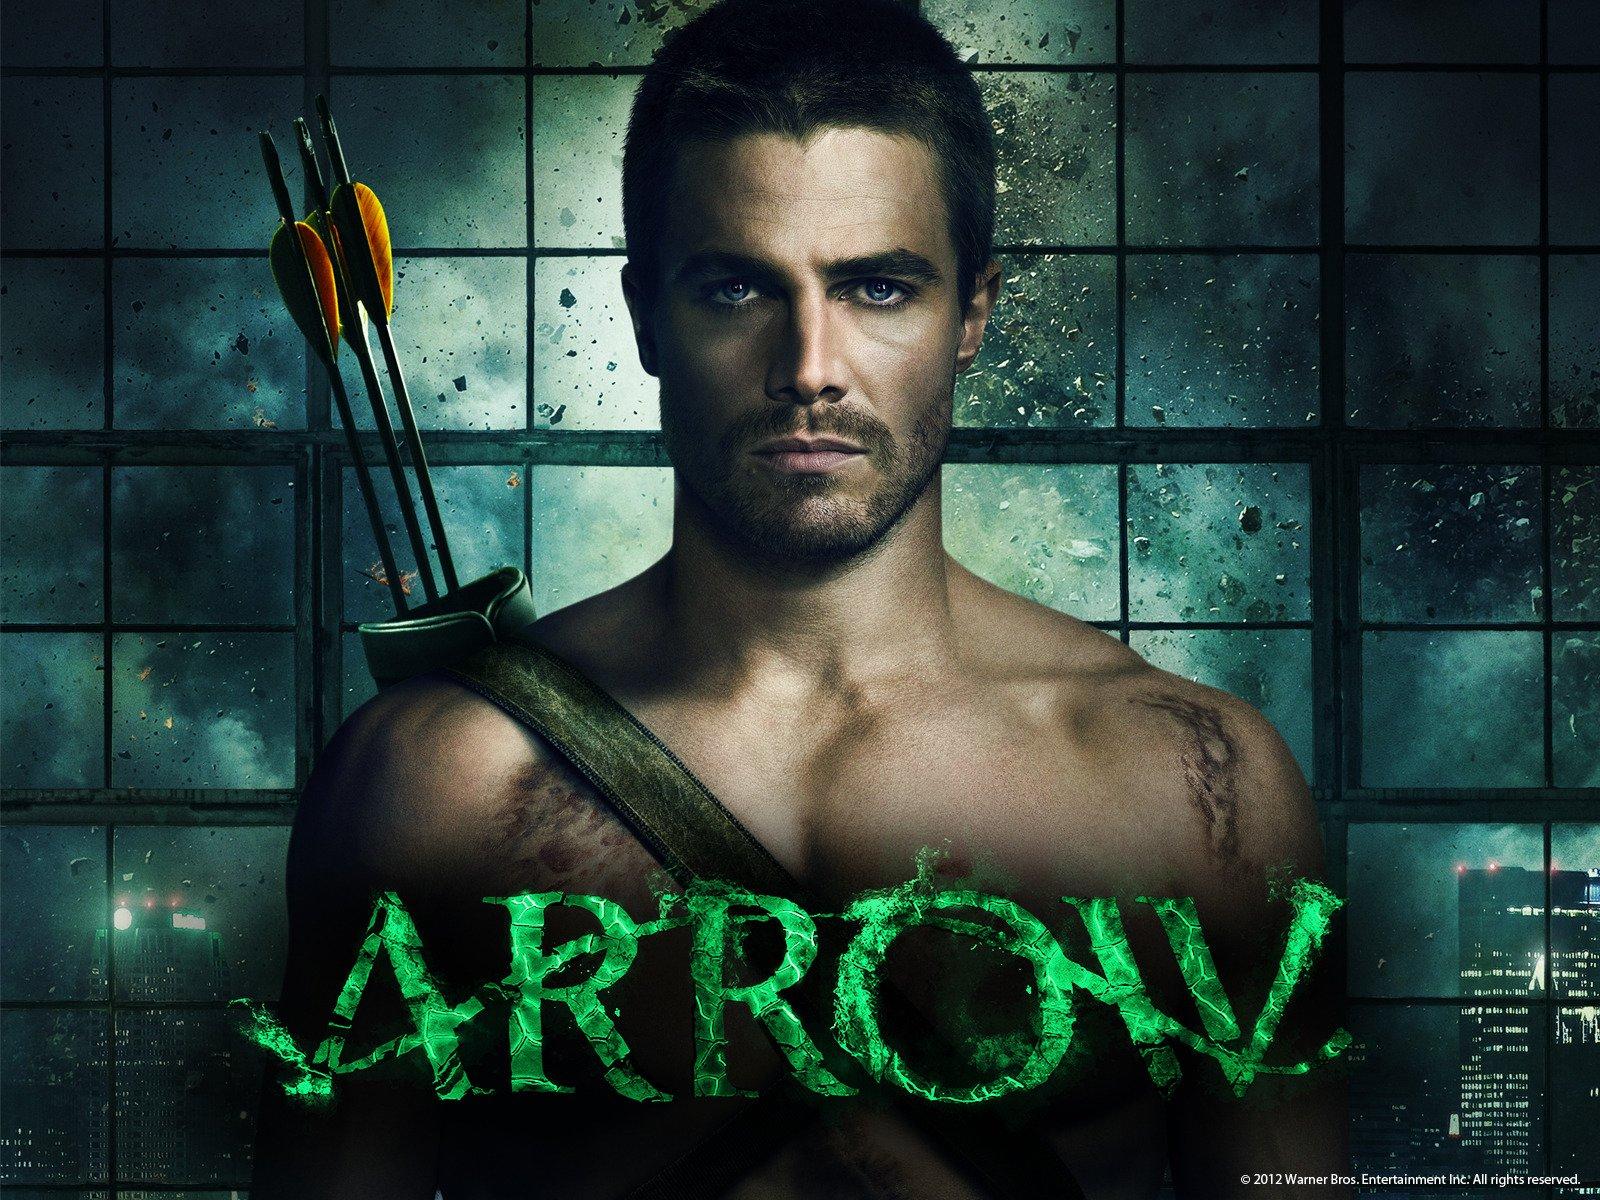 Amazon.co.uk: Watch Arrow Season 1